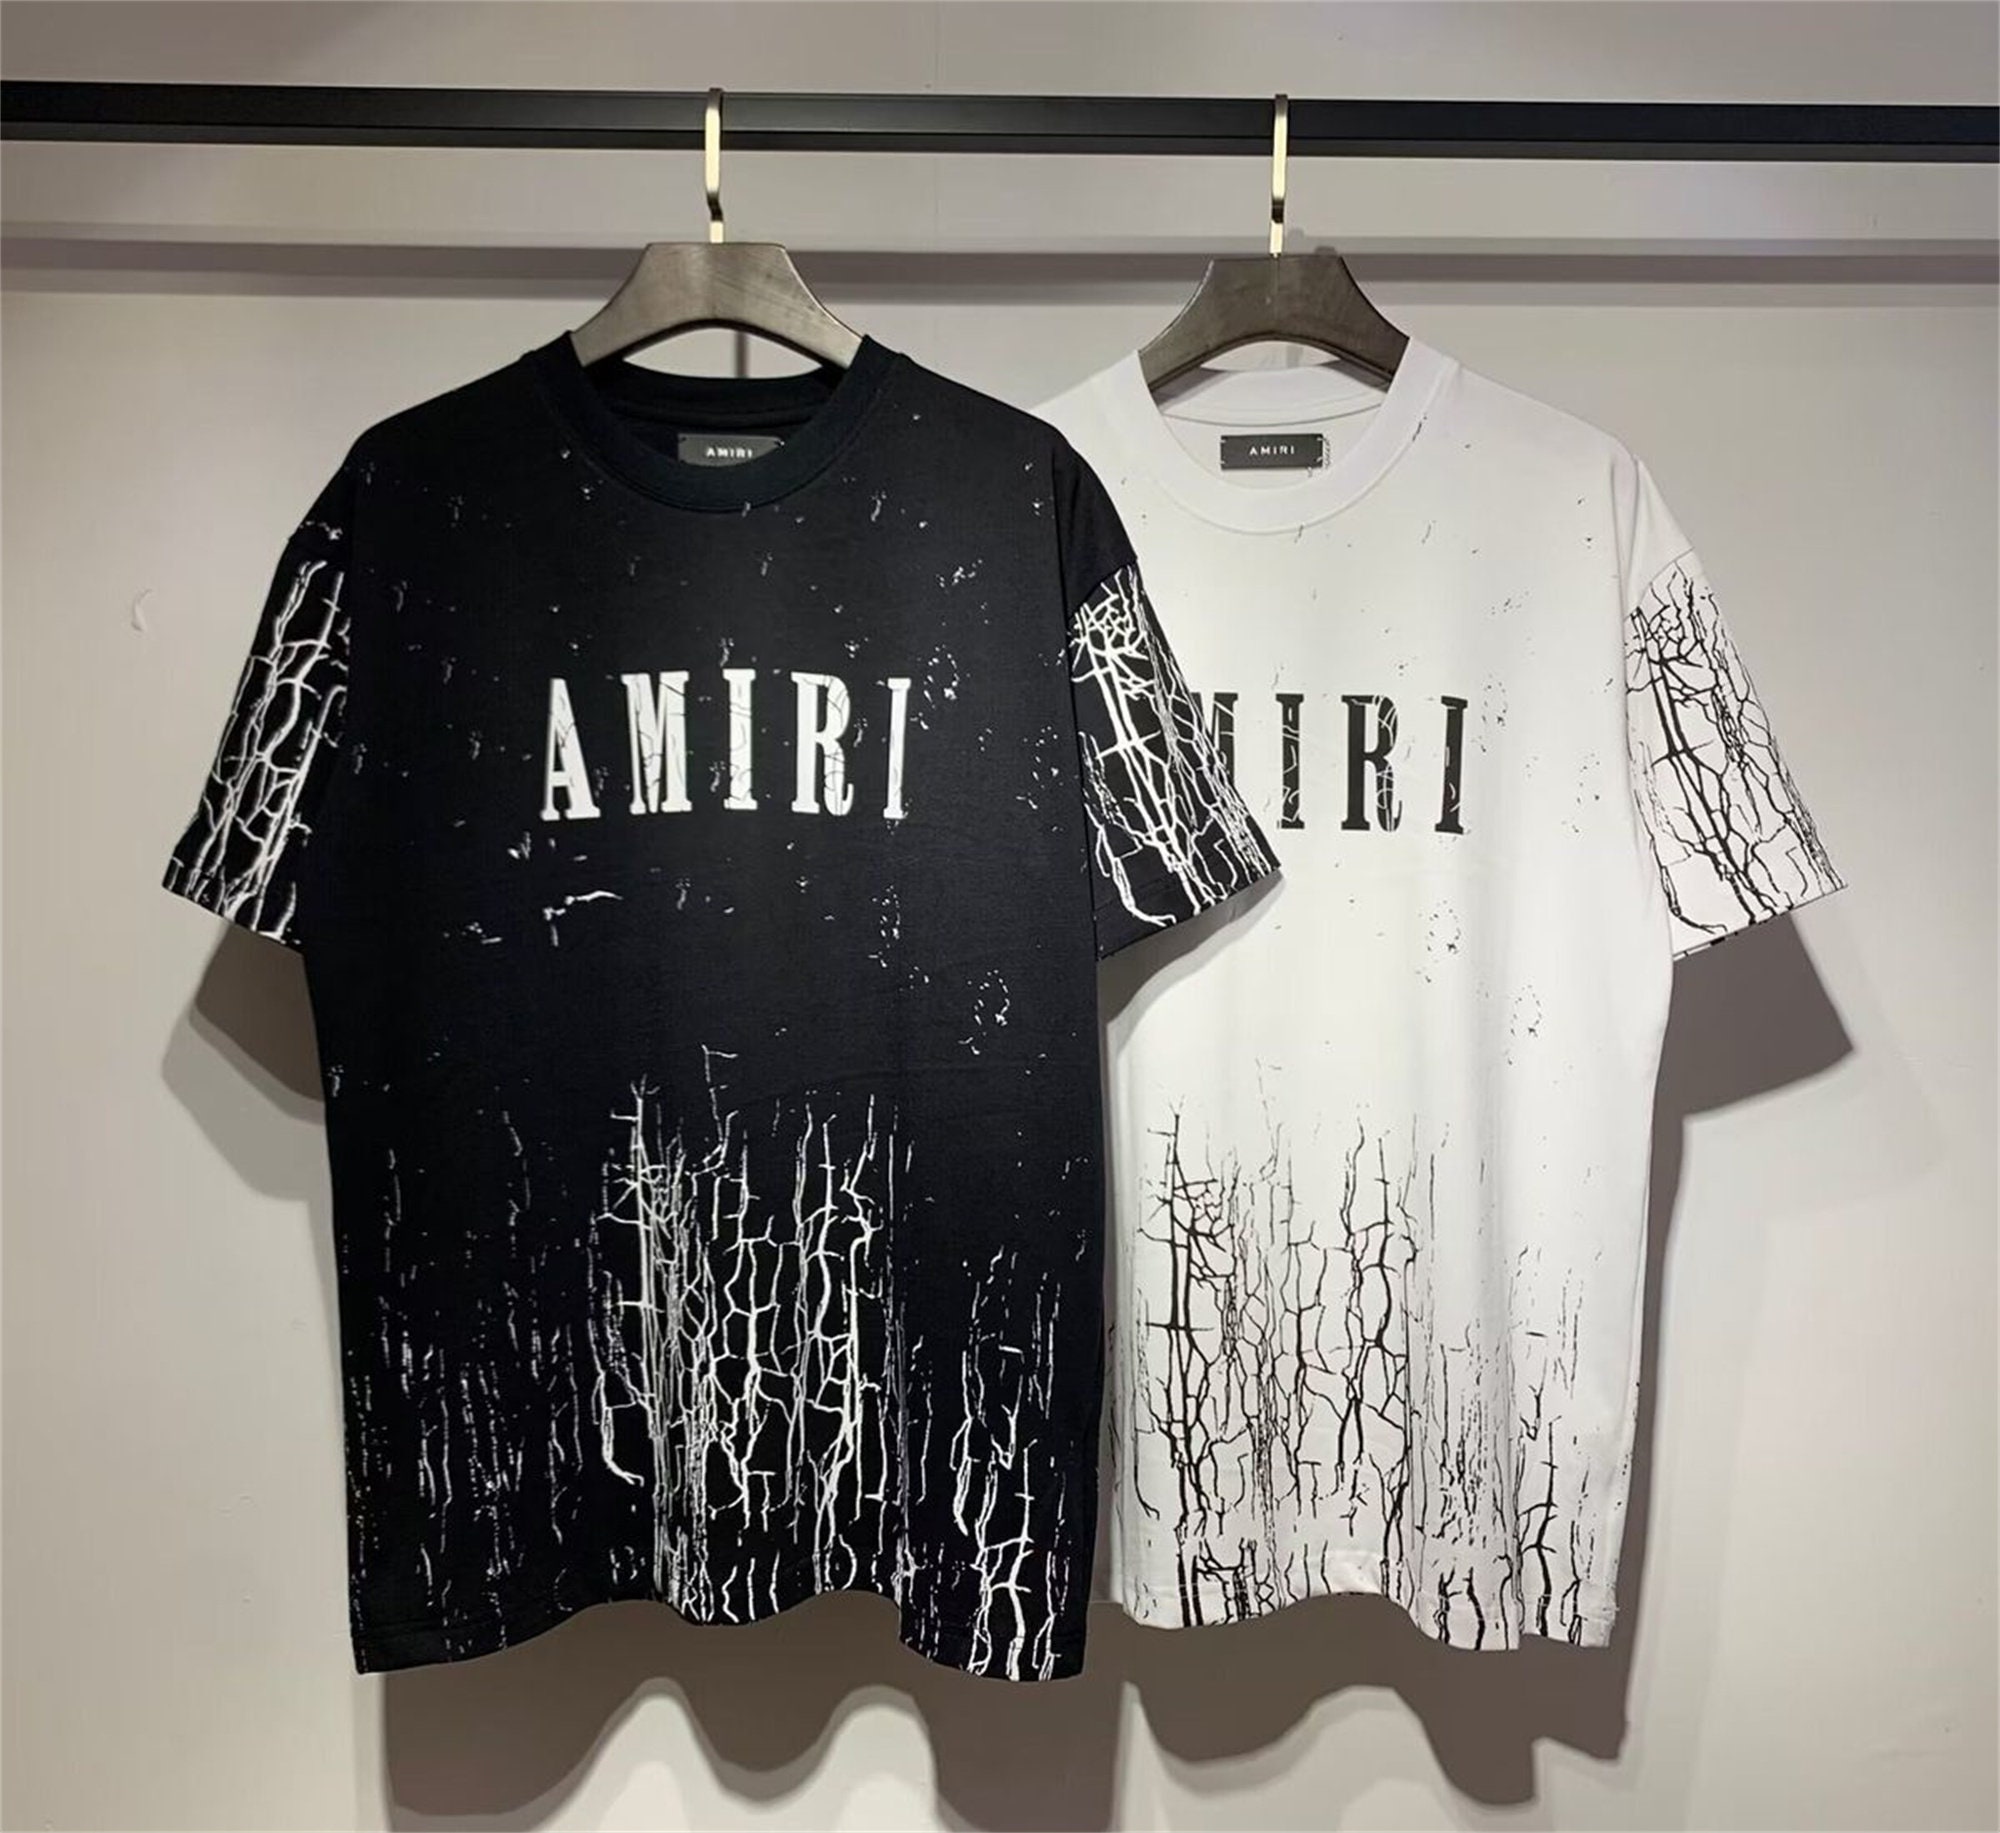 Amiri Paint-splatter Logo Cotton T-shirt in Black for Men